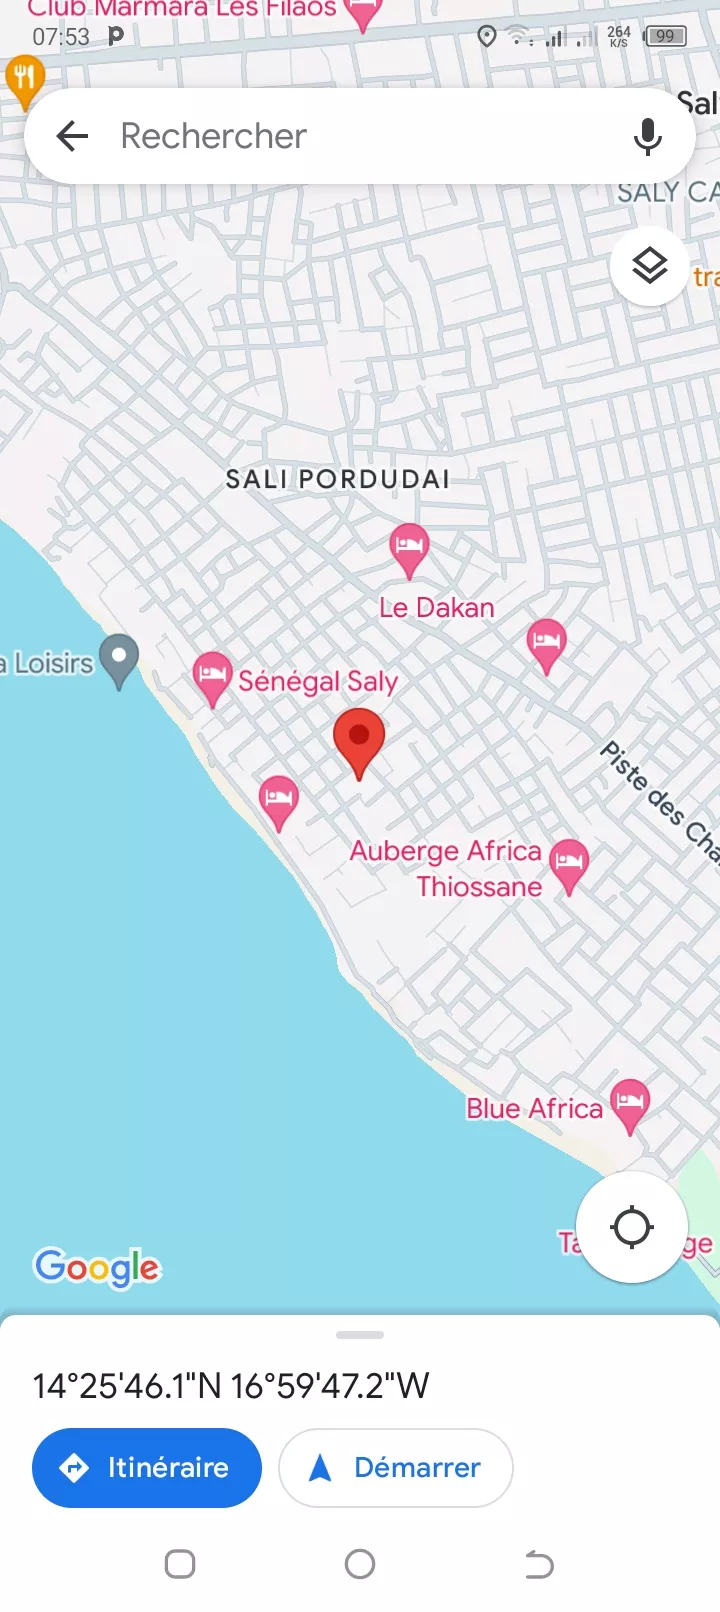 Terrain 475 mètres carrés à Saly à 35000000 - Petites annonces gratuites - Achat et vente à Mbour, Sénégal